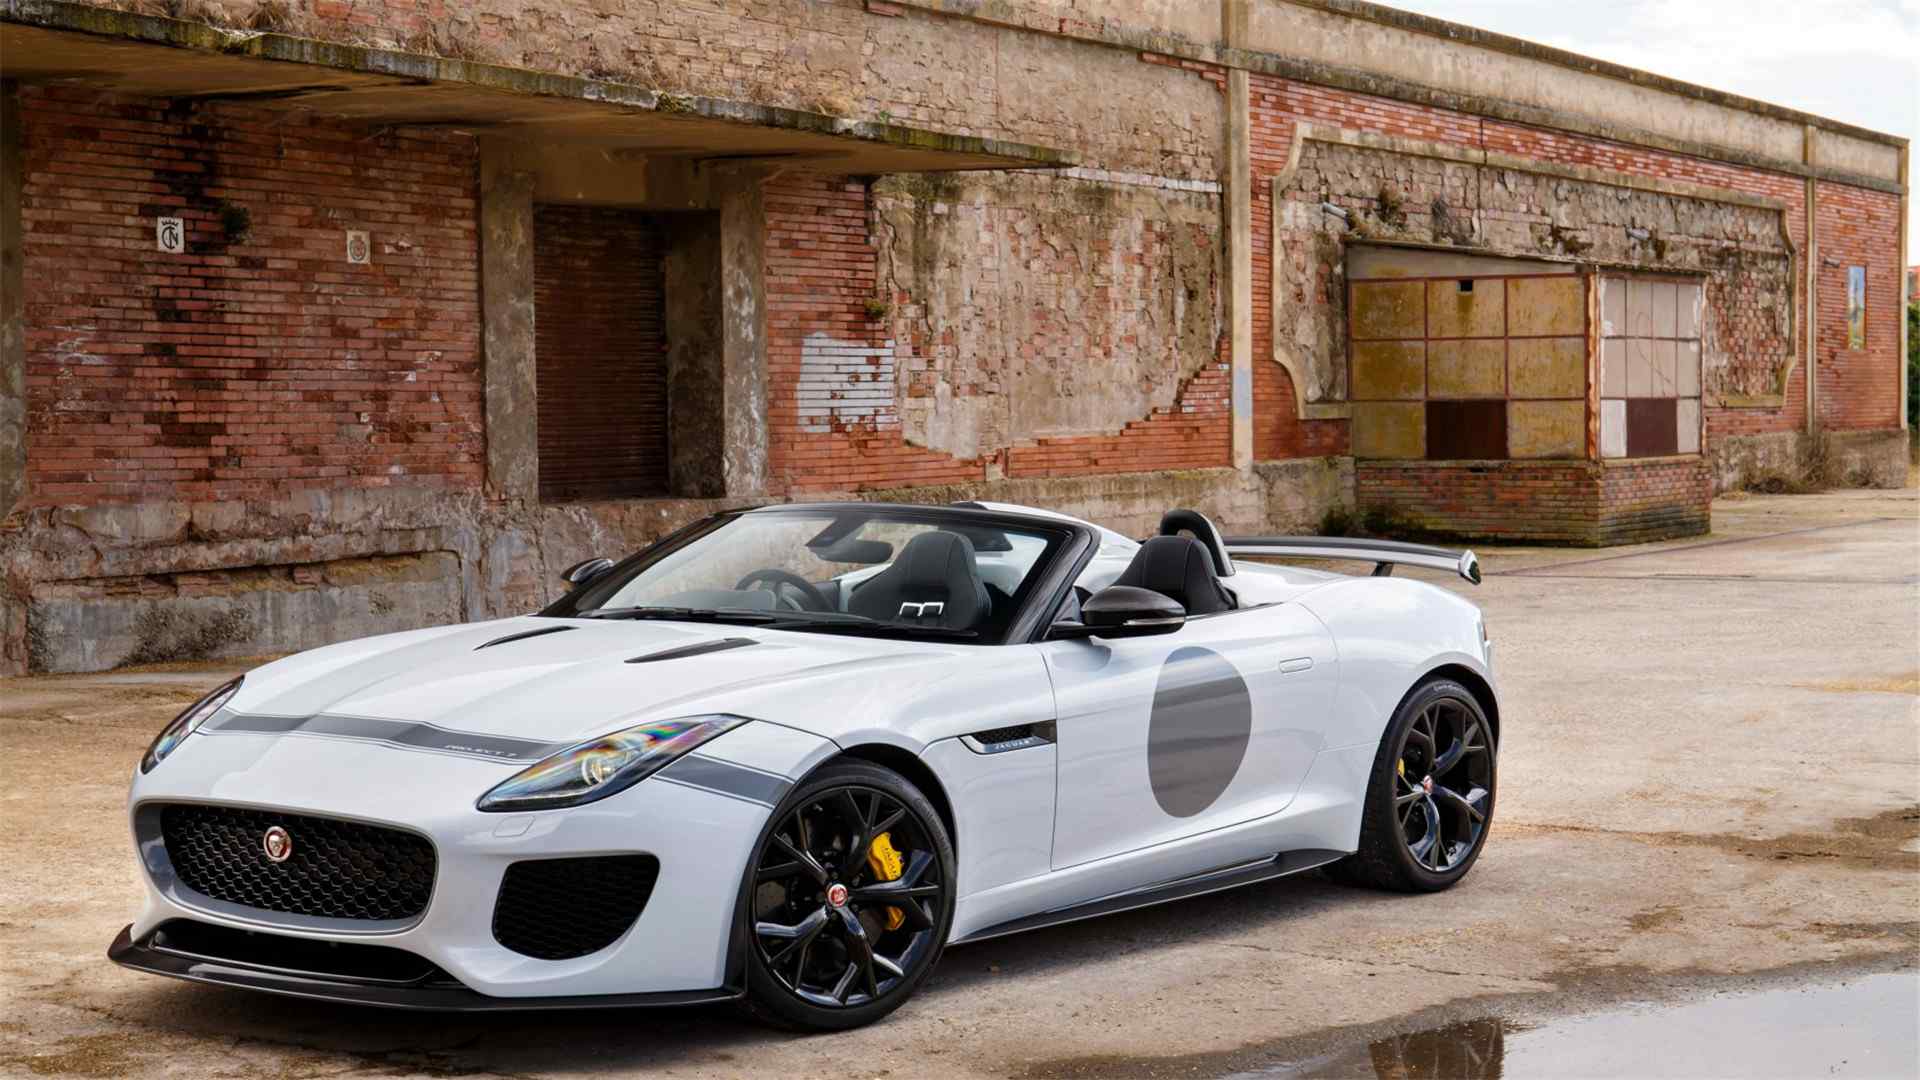 高清晰白色jaguar-xj捷豹XJ轿车壁纸